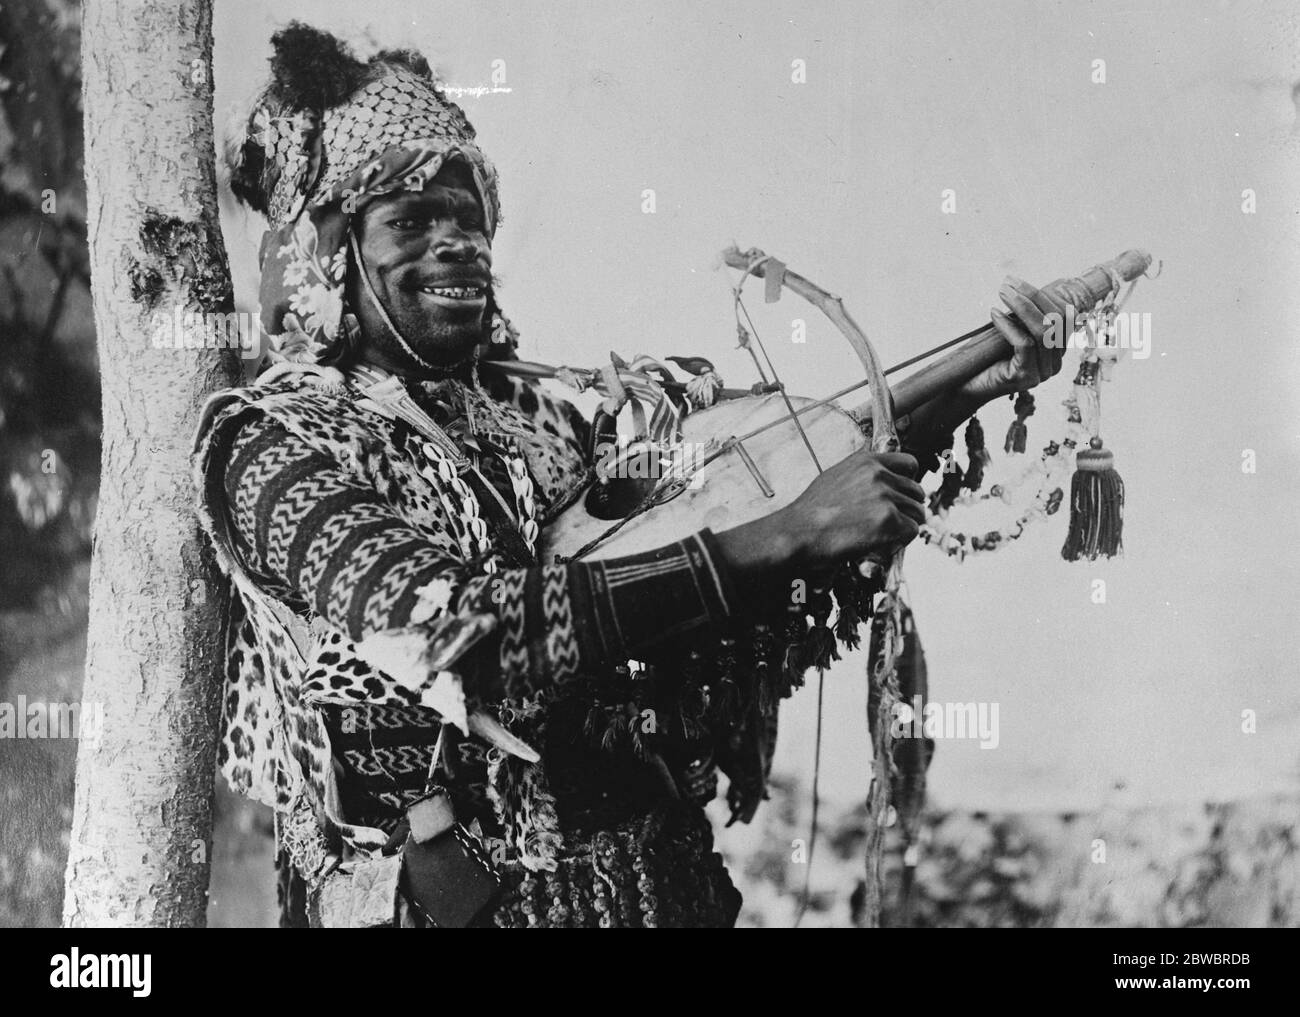 Ein patriotischer Untertanen seiner Majestät EIN Bild aus dem Sudan, das einen einheimischen Krieger mit seinem Instrument zeigt, das "Gott rettet den König" spielt 16. Januar 1926 Stockfoto